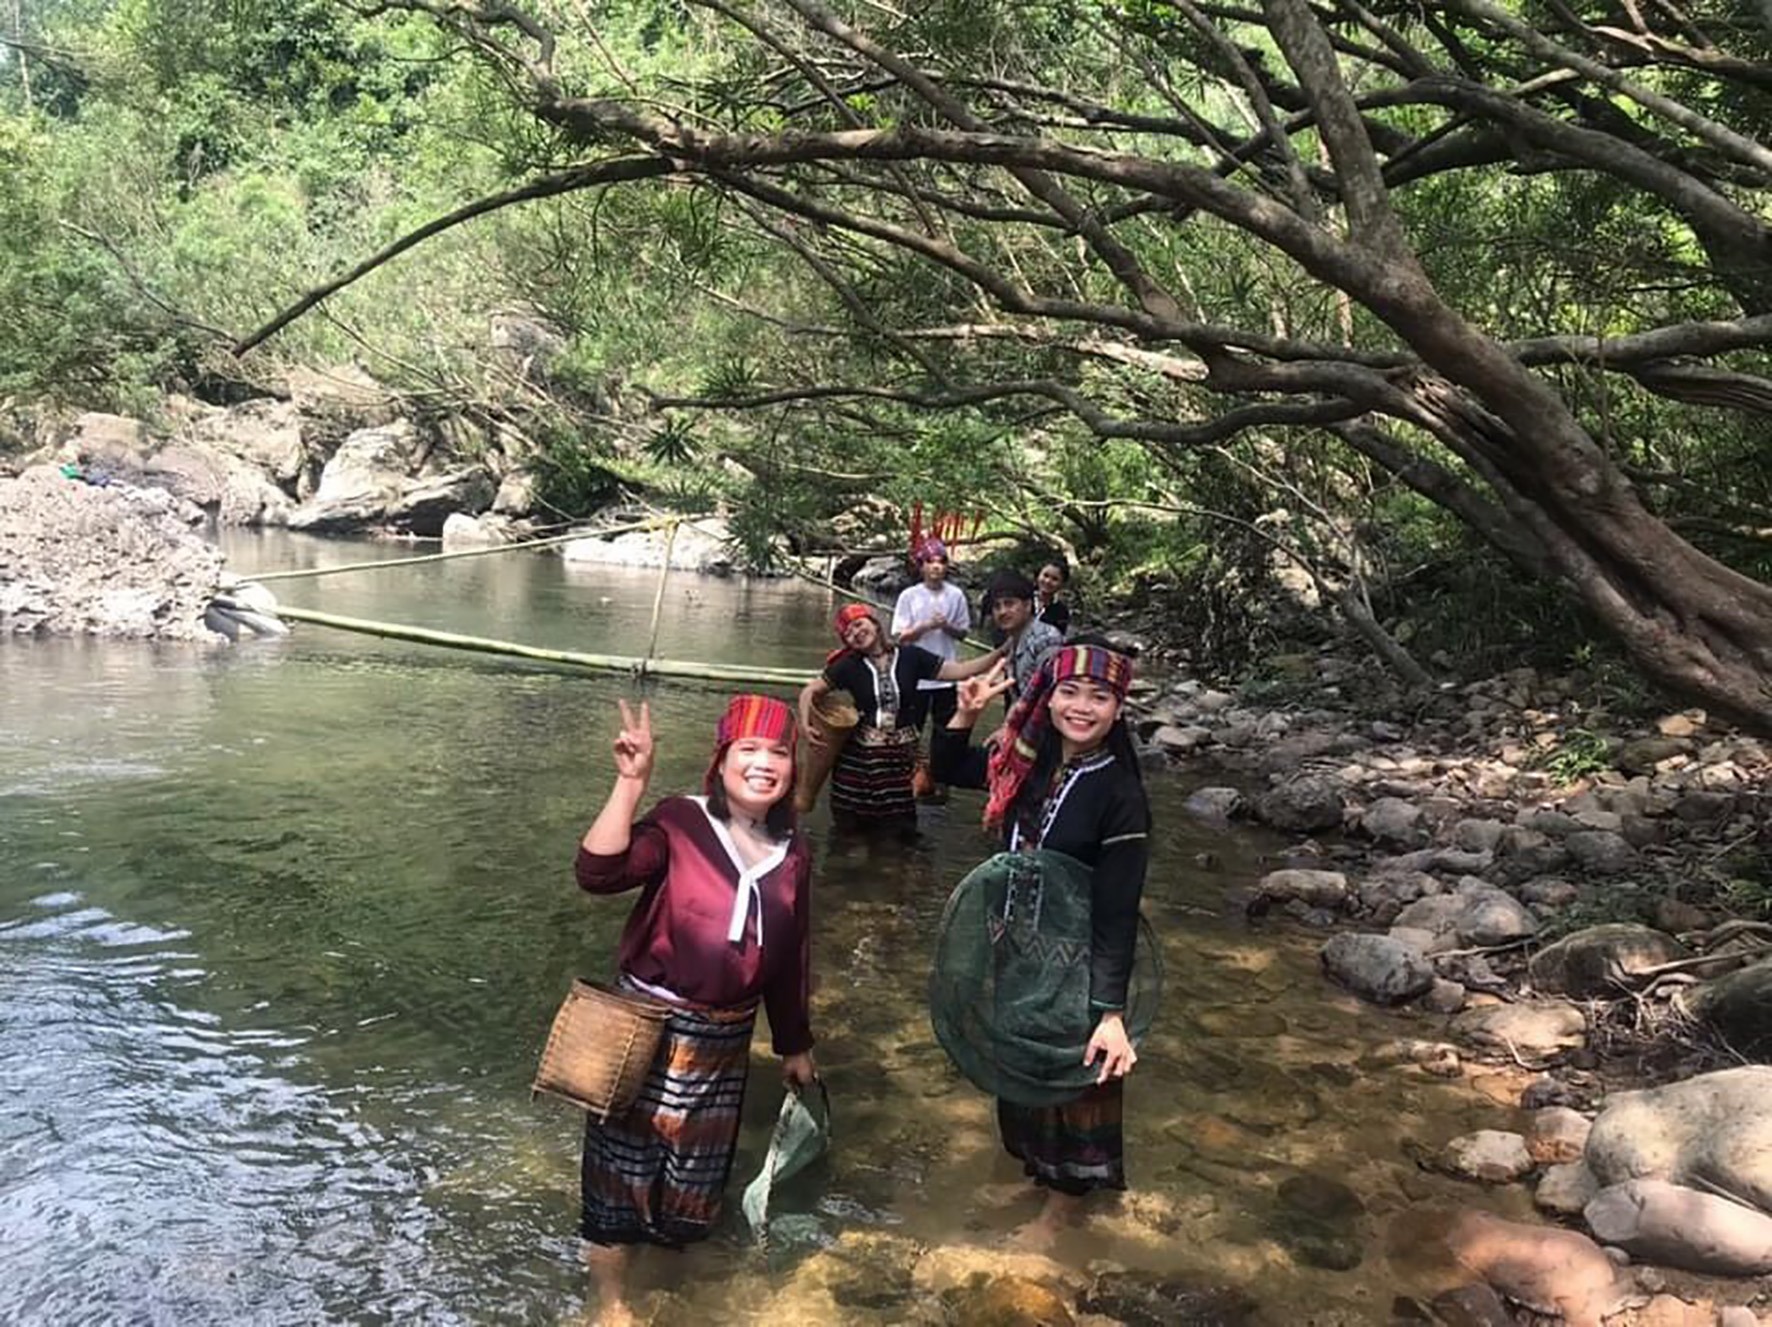 Tour du lịch trải nghiệm suối Tà Lao, xã Tà Long, huyện Đakrông thu hút giới trẻ - Ảnh: M.L